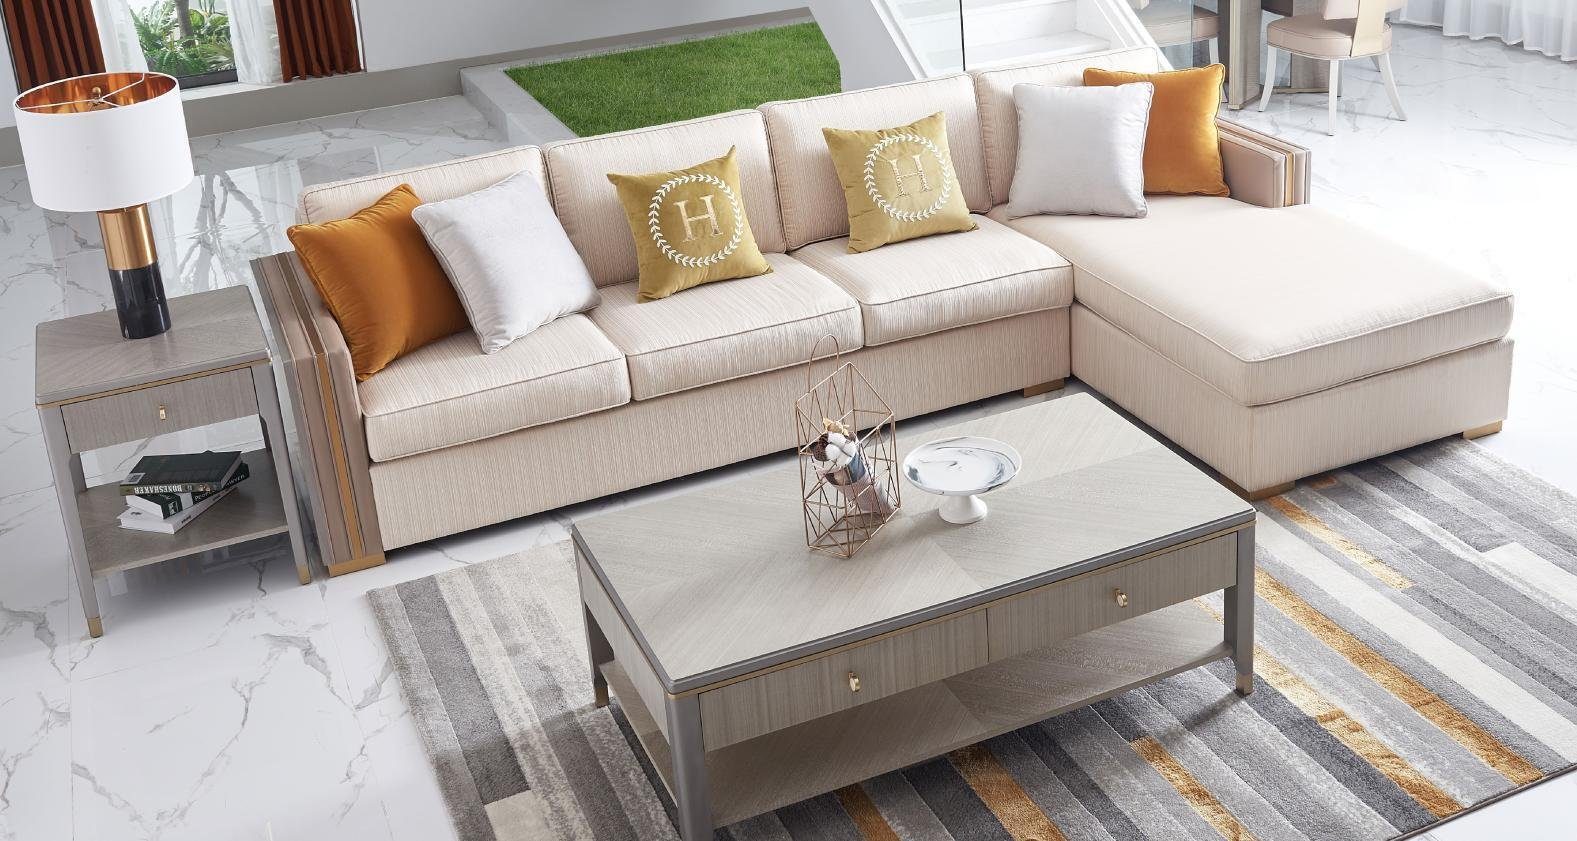 Eck JVmoebel Sofa, Europe Design Ecksofa in Made Luxus Wohnlandschaft Textil Ecksofa